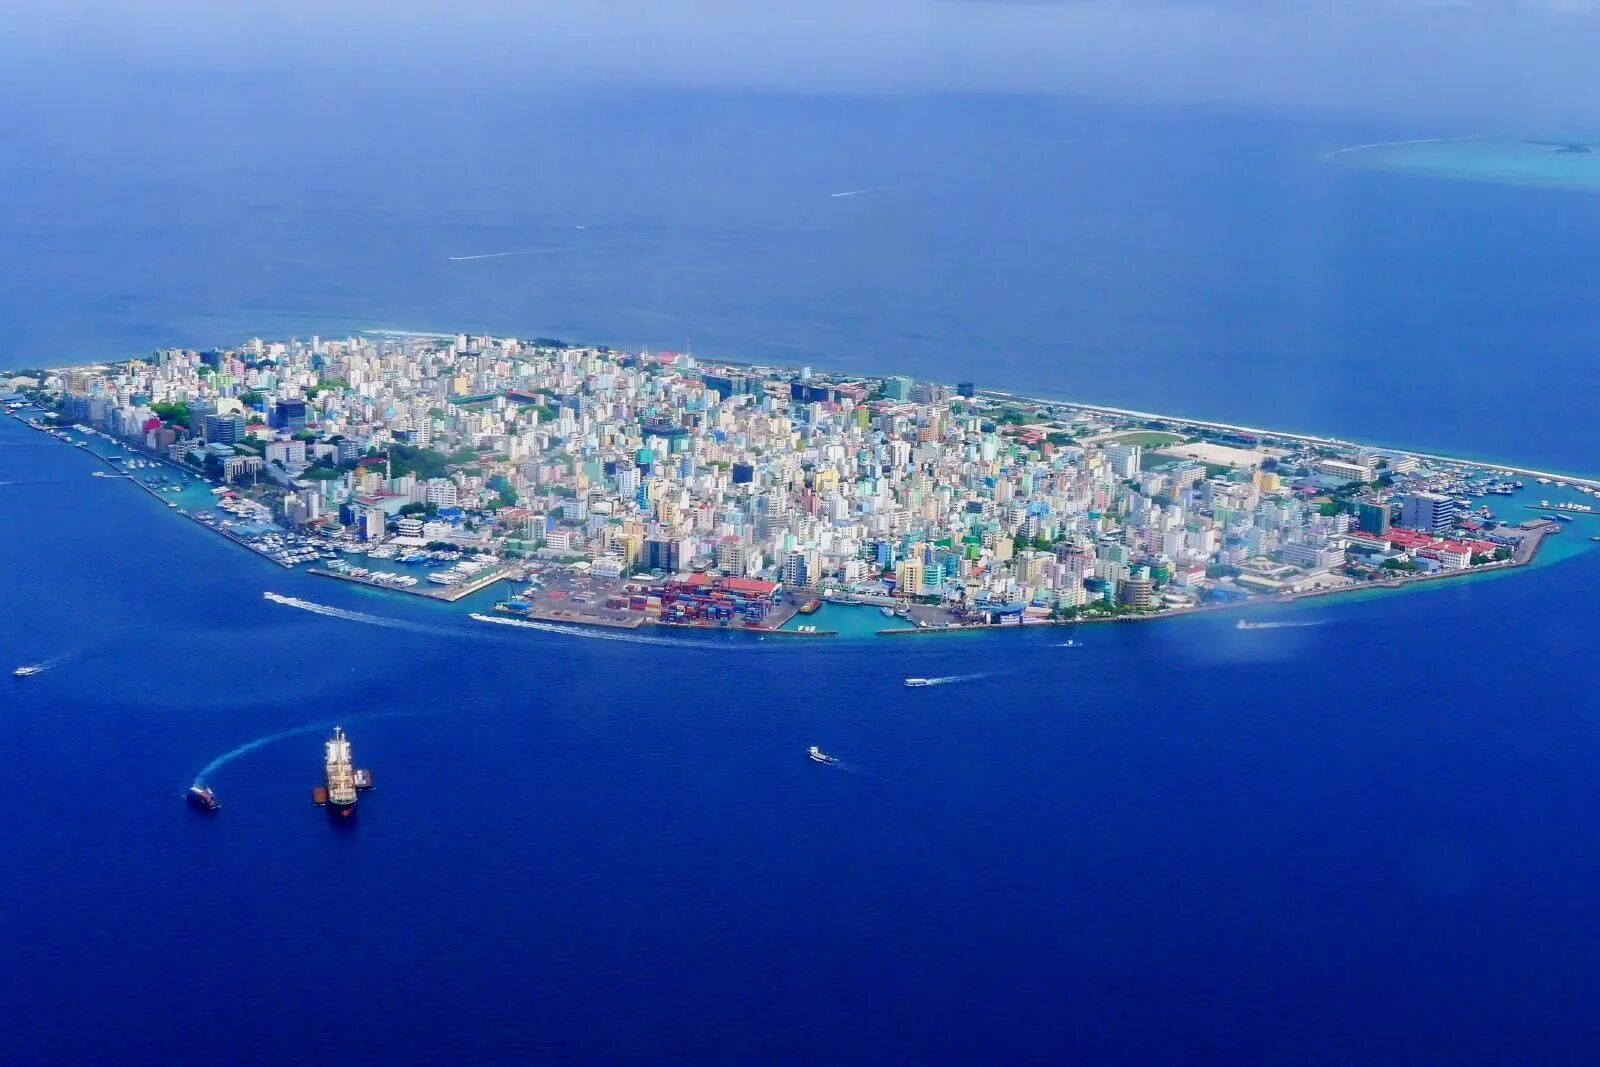 Island город. Столица Мальдивской Республики. Остров Мале Мальдивы. Острова Мальдивы столица Мале. Площадь Мале Мальдивы.